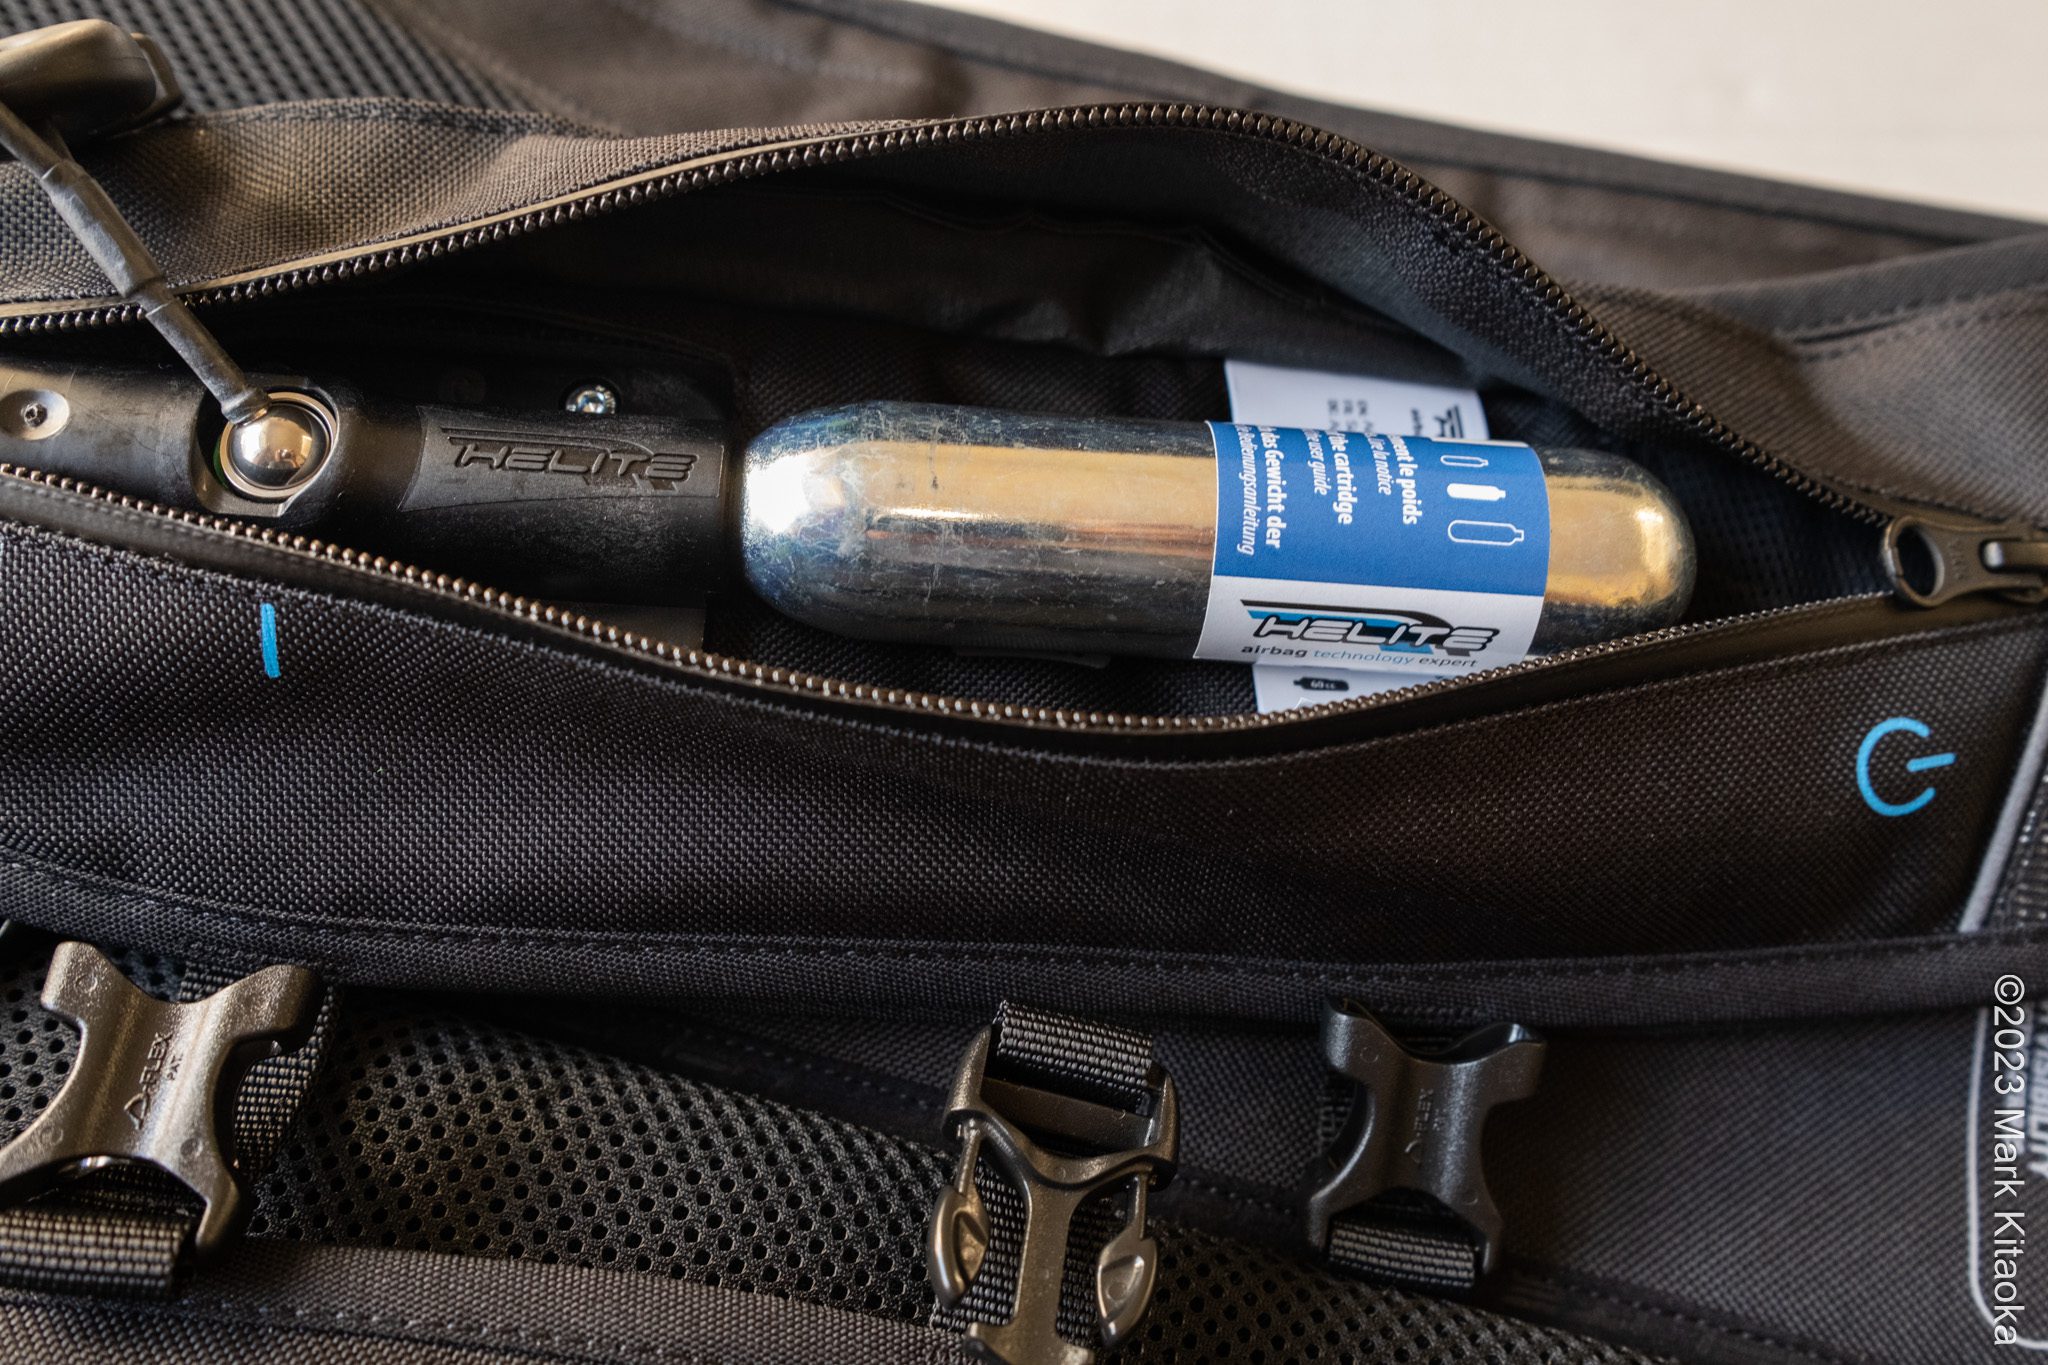 co2 cartridge in pouch zipper